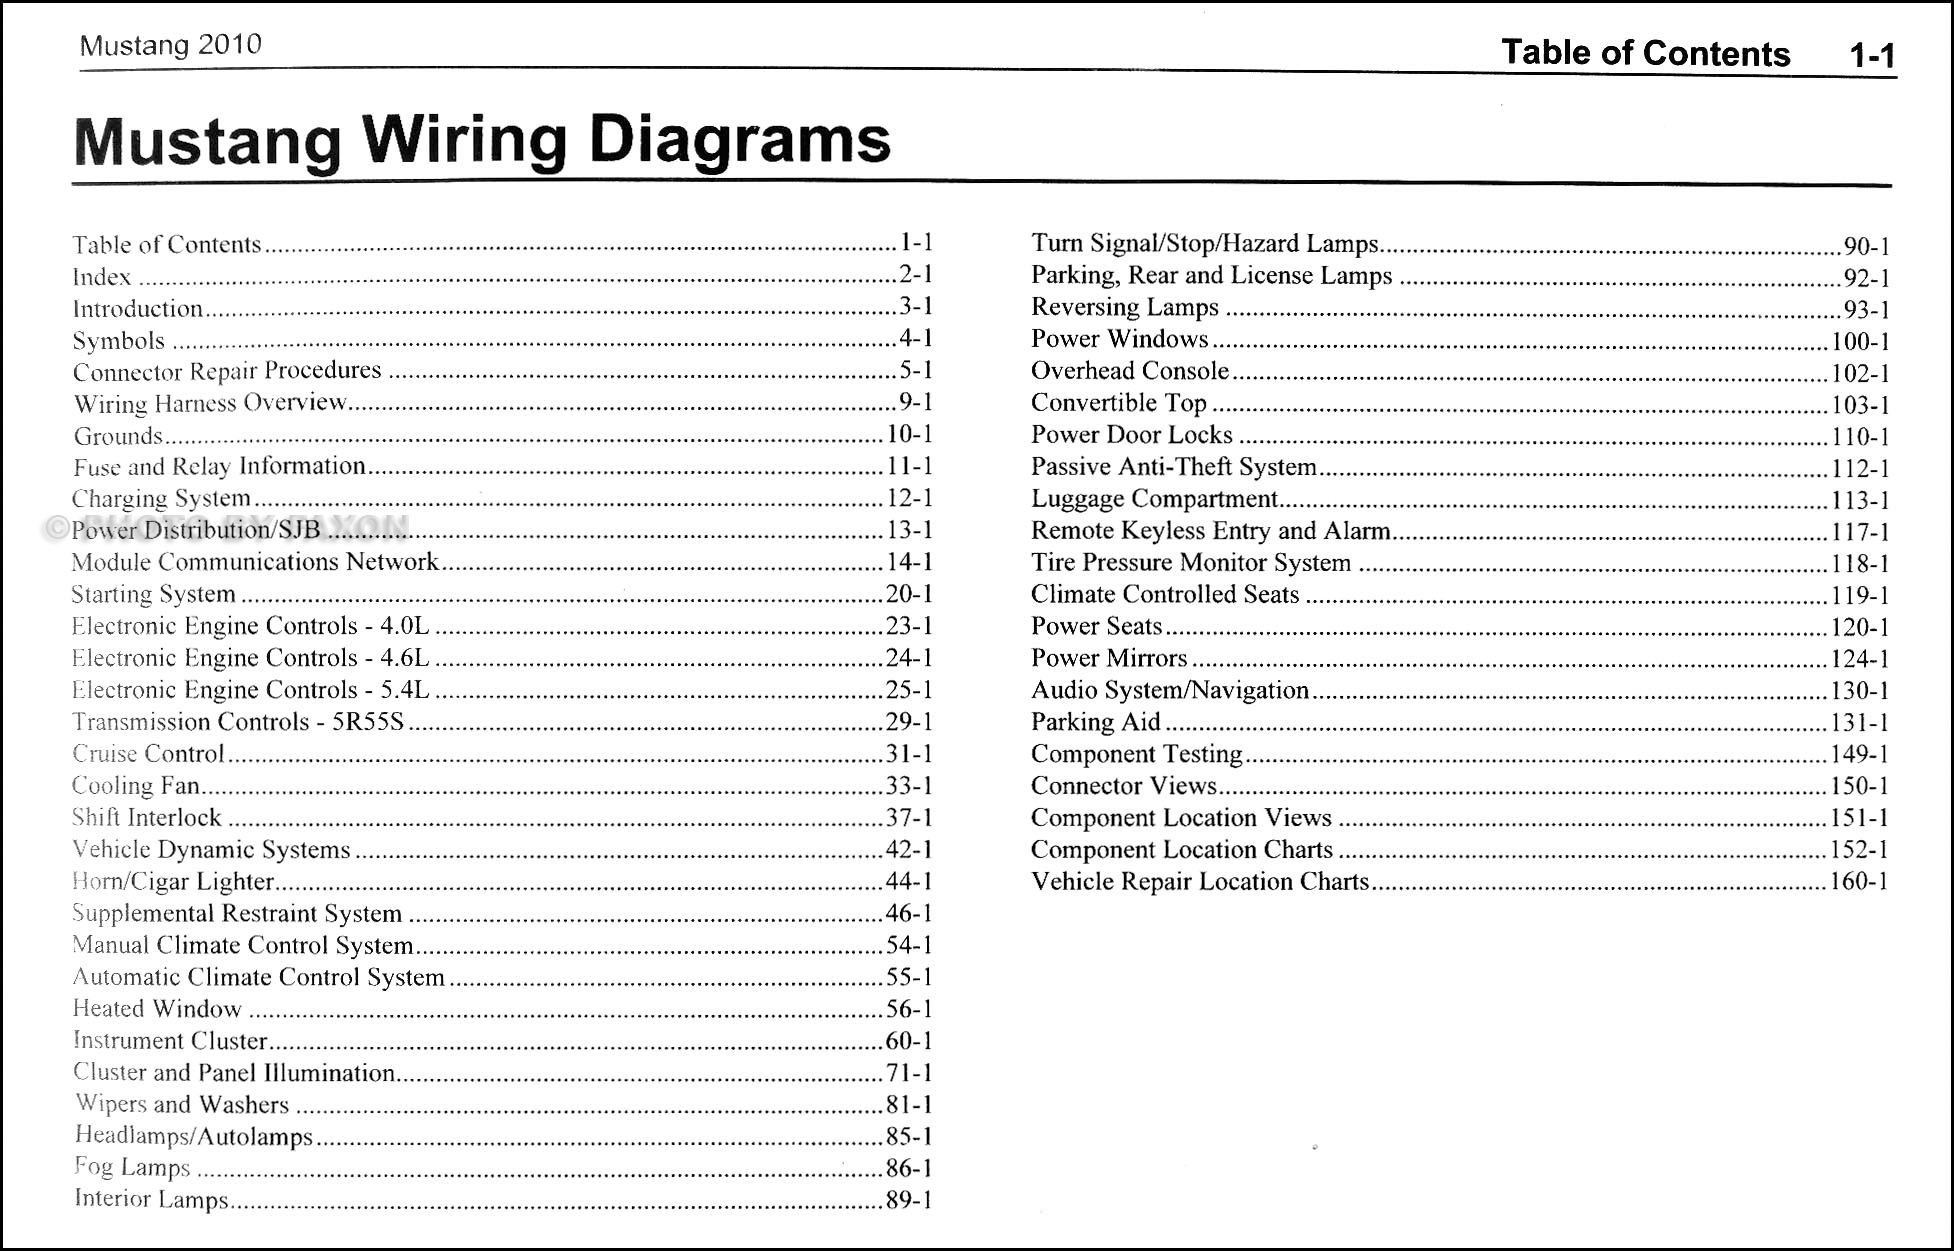 1989 Ford Mustang Wiring Diagram from cfd84b34cf9dfc880d71-bd309e0dbcabe608601fc9c9c352796e.ssl.cf1.rackcdn.com